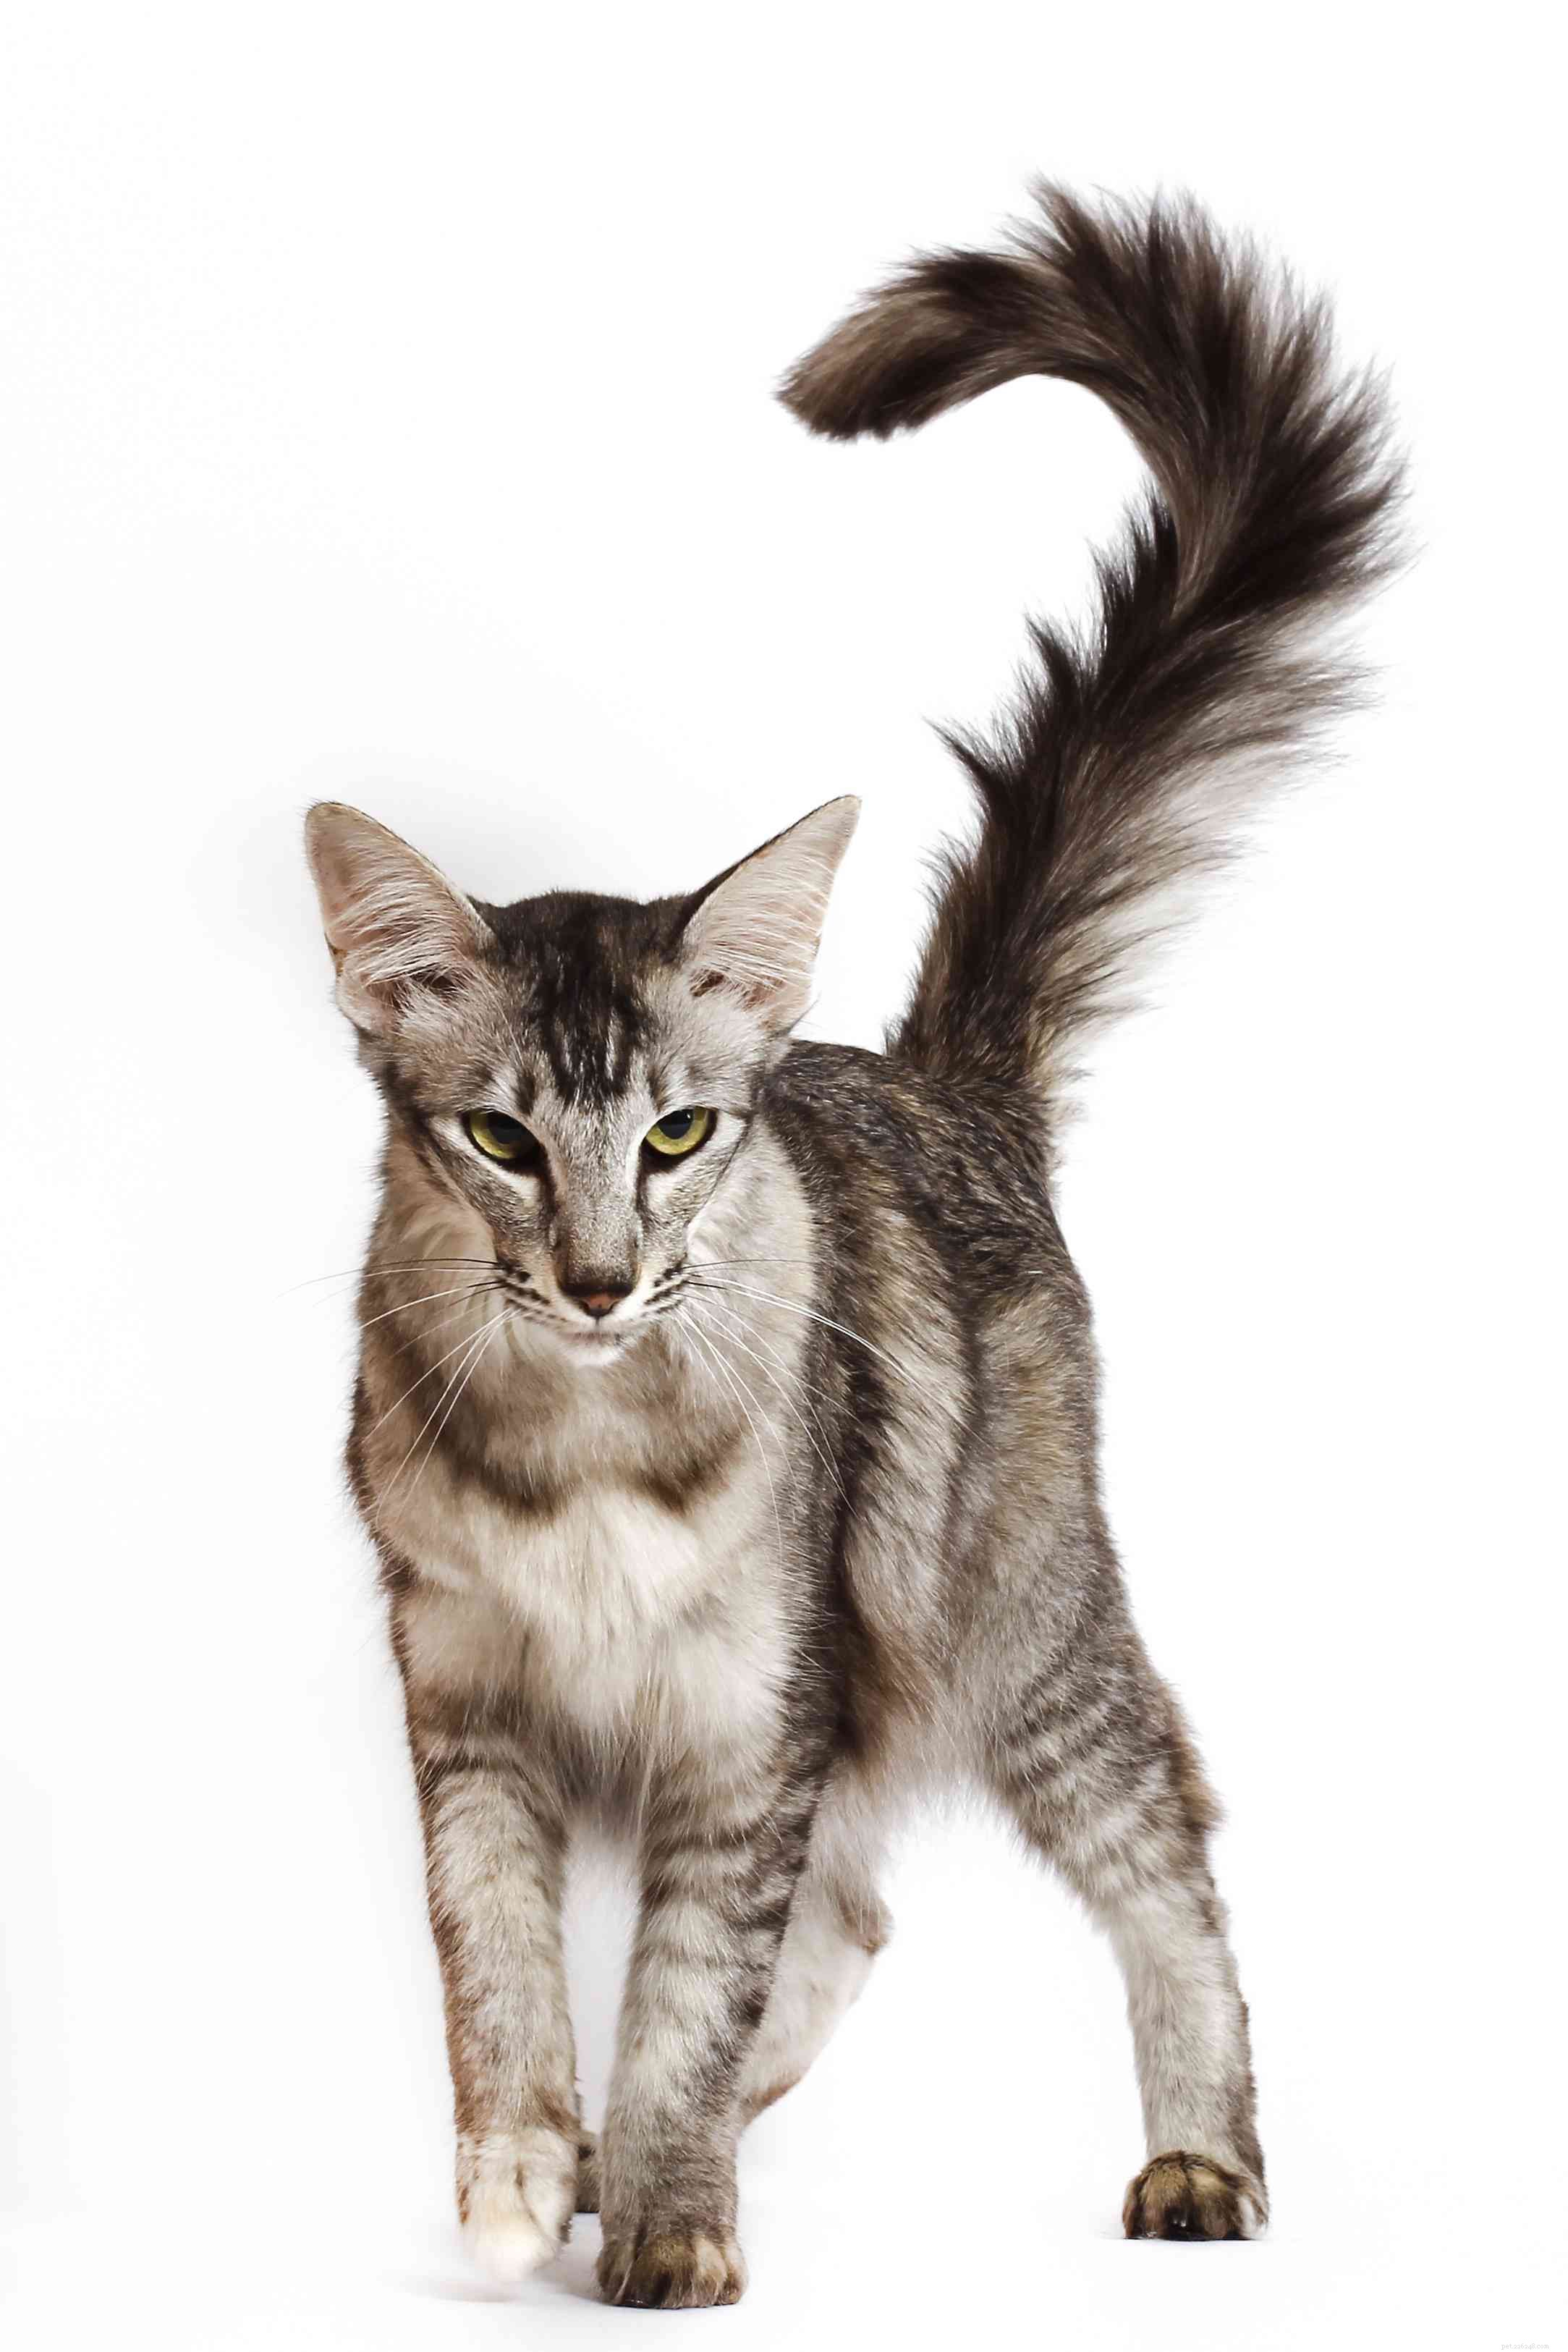 オリエンタルロングヘア：猫の品種のプロフィール 